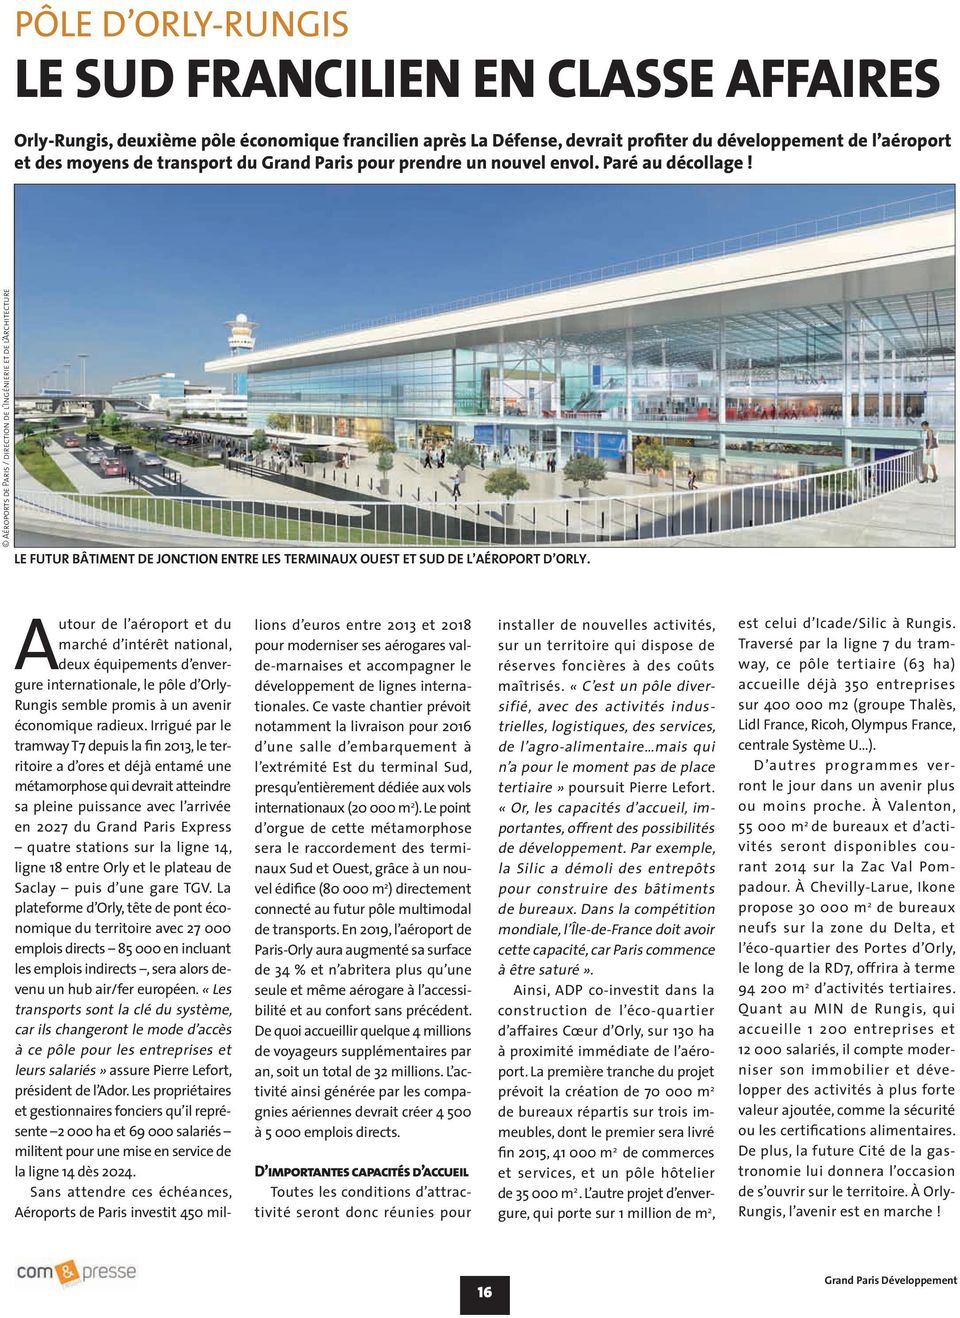 Autour de l aéroport et du marché d intérêt national, deux équipements d envergure internationale, le pôle d Orly- Rungis semble promis à un avenir économique radieux.